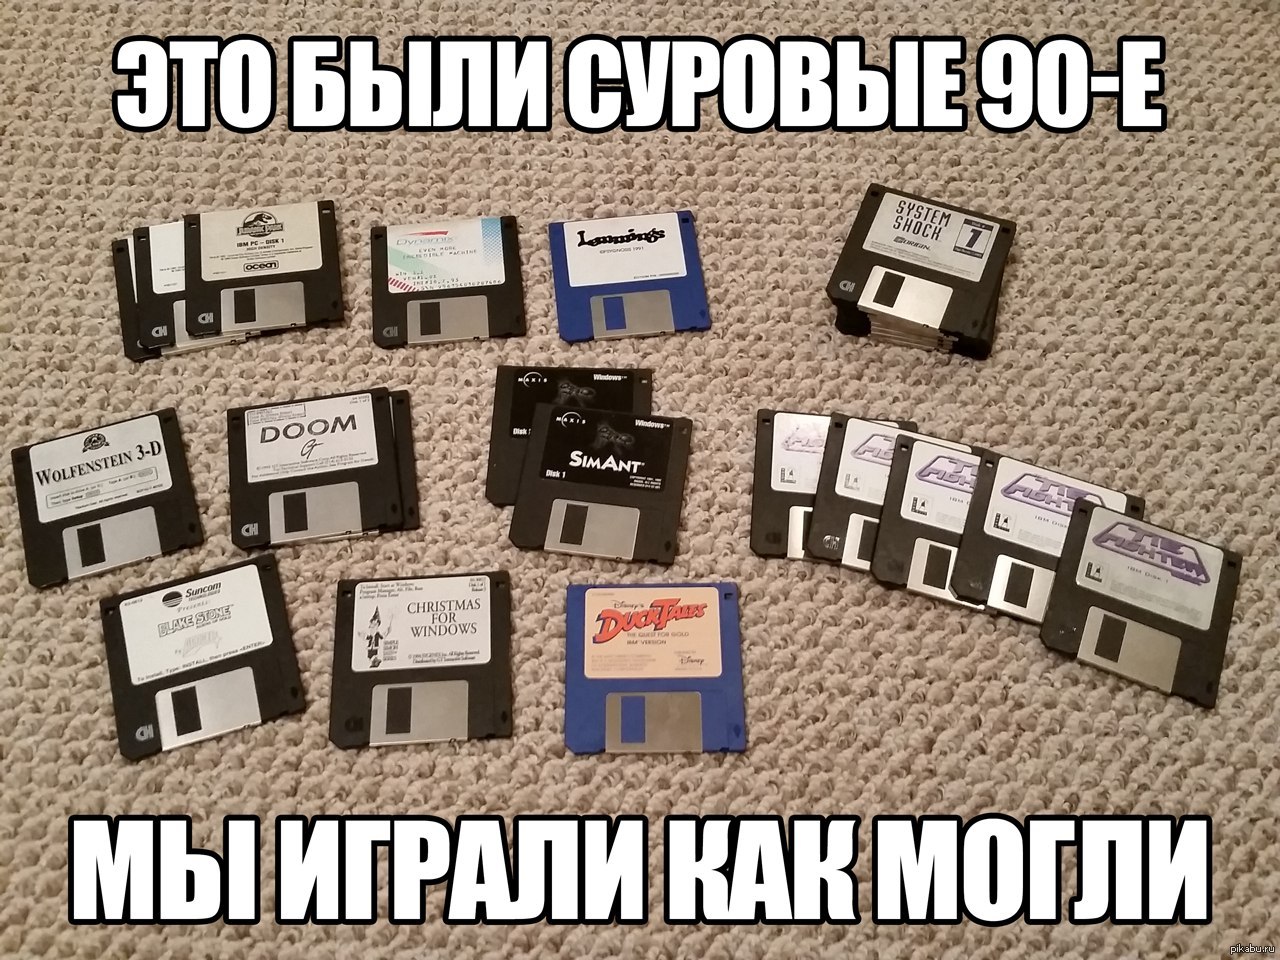 Российские компьютерные игры 90-х годов. Часть 1 - 1